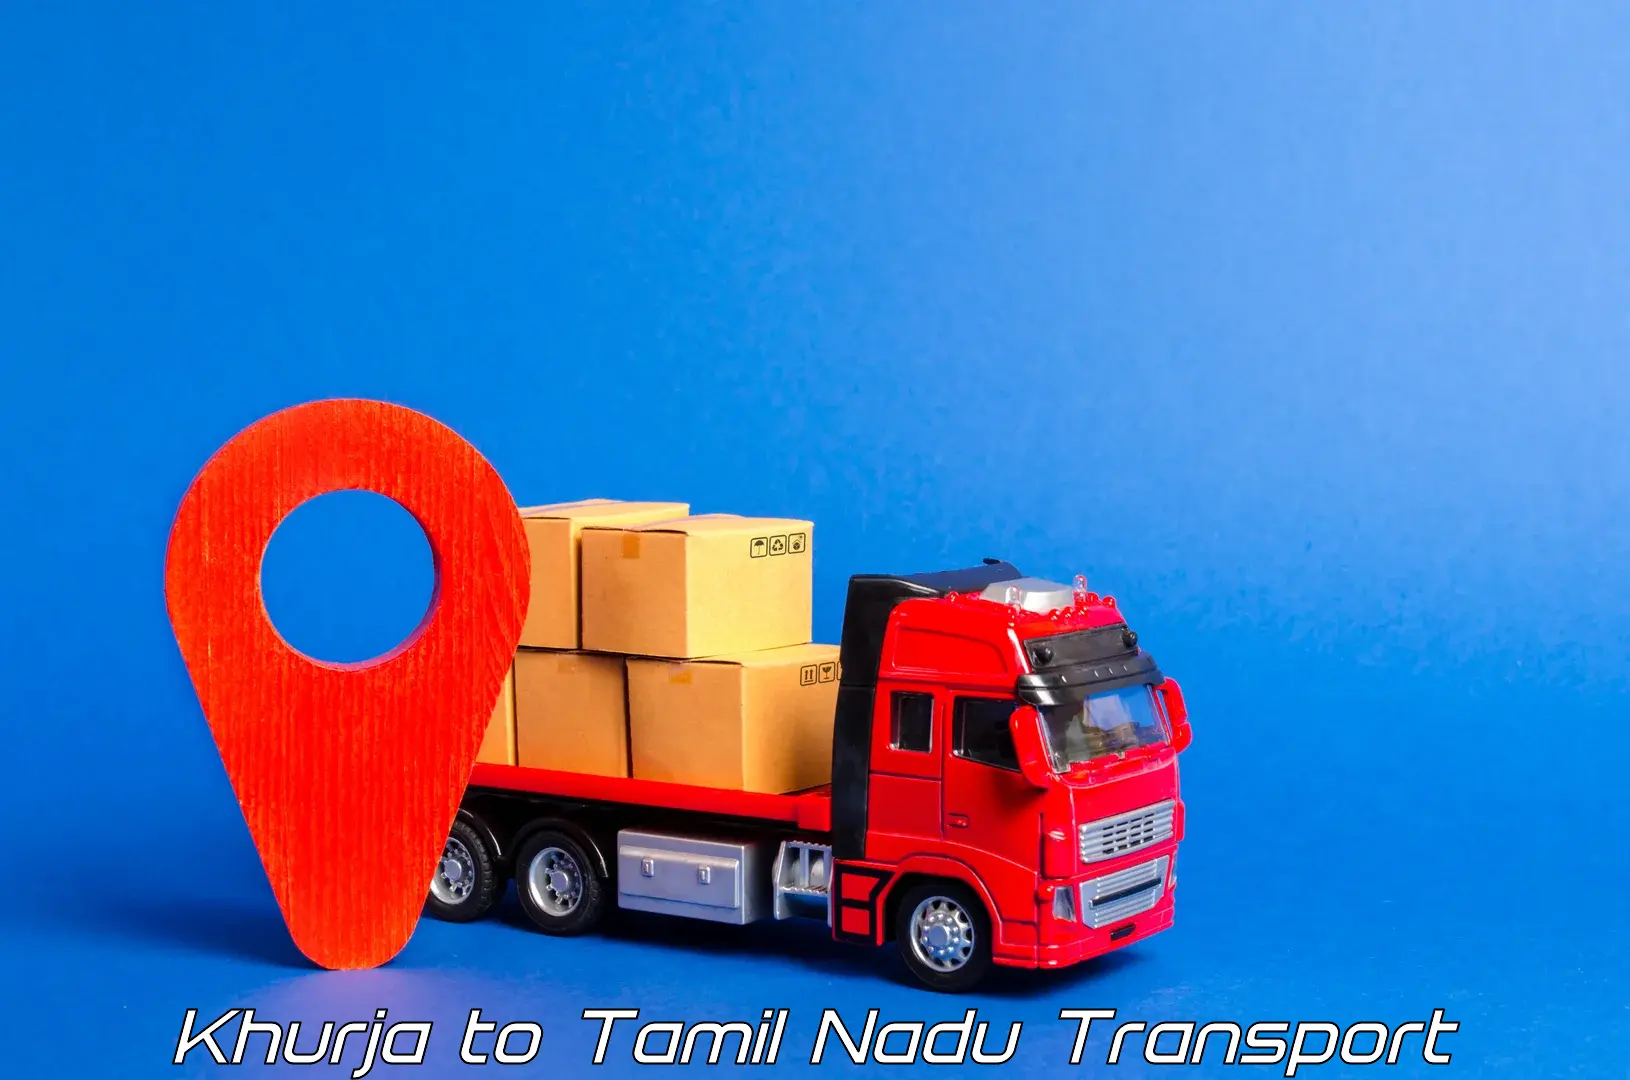 Transportation solution services Khurja to Gudiyattam